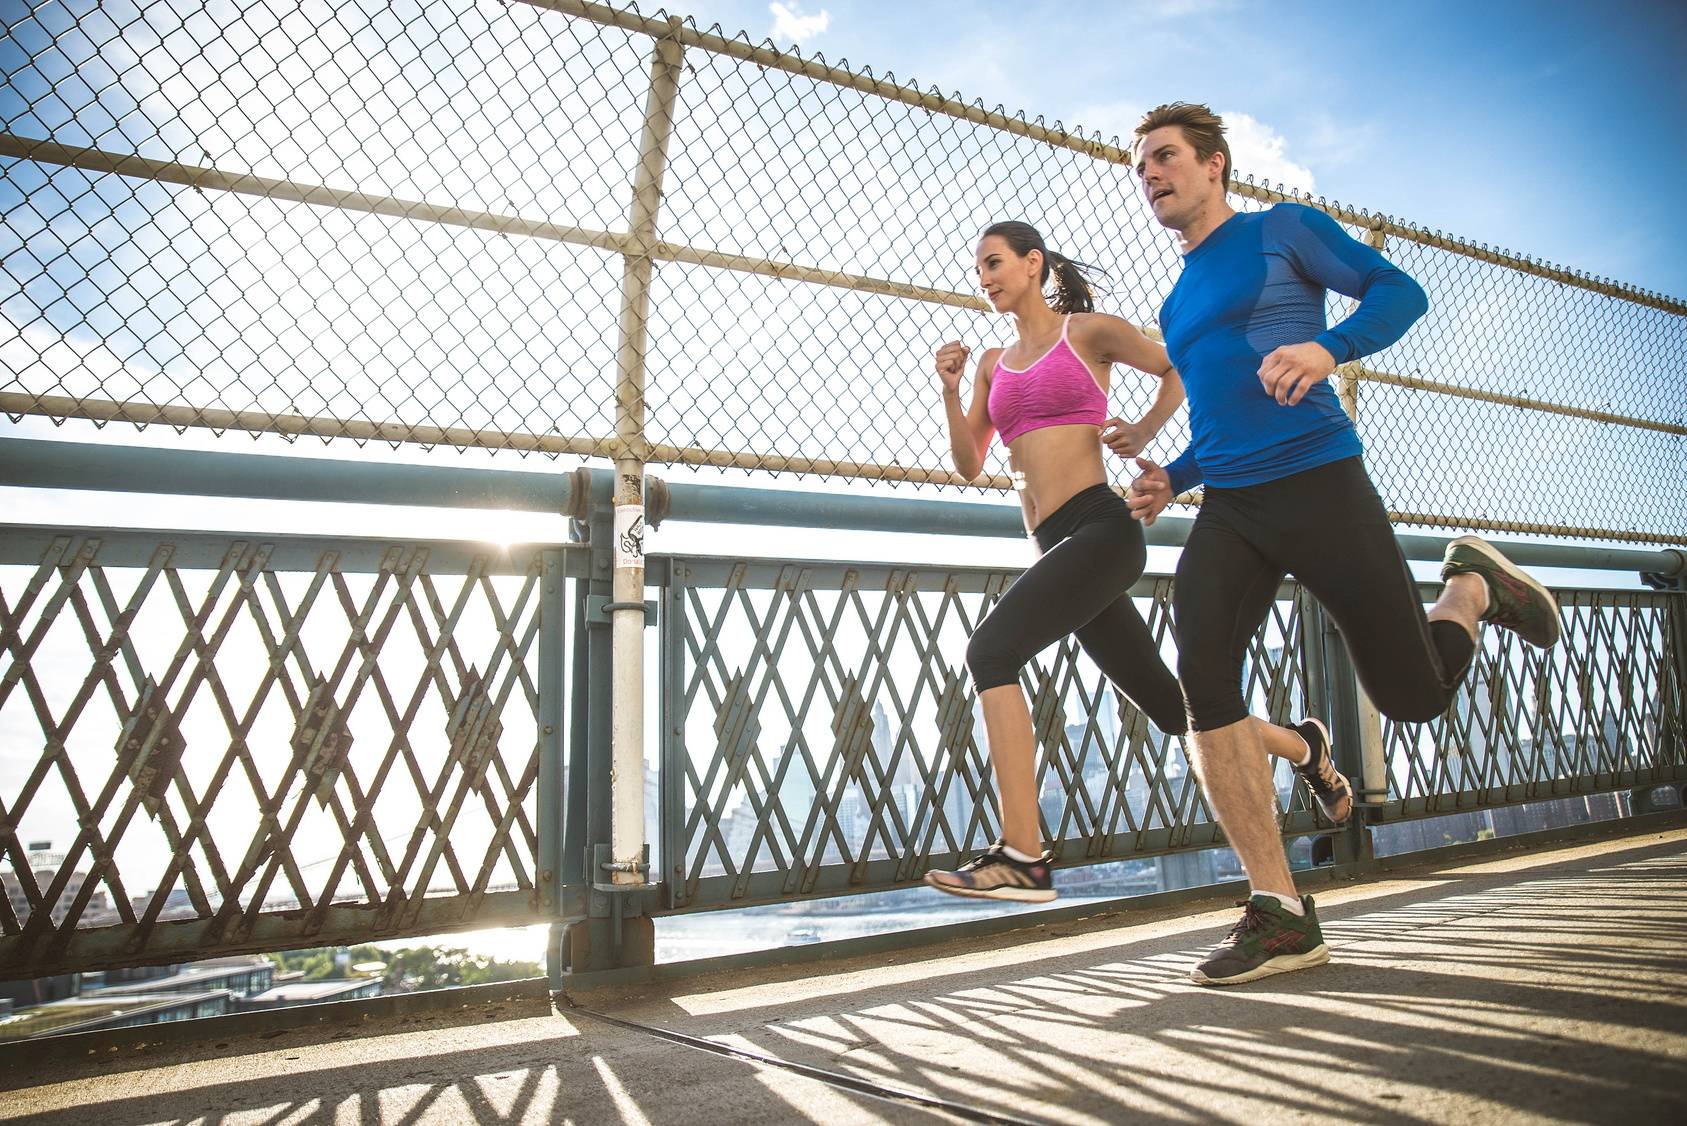 Biegacze nie muszą rezygnować z biegania, jeśli wynik rezonansu magnetycznego pokazuje zwyrodnienie kręgosłupa. Para biegaczy w strojach sportowych biegnie przez most.